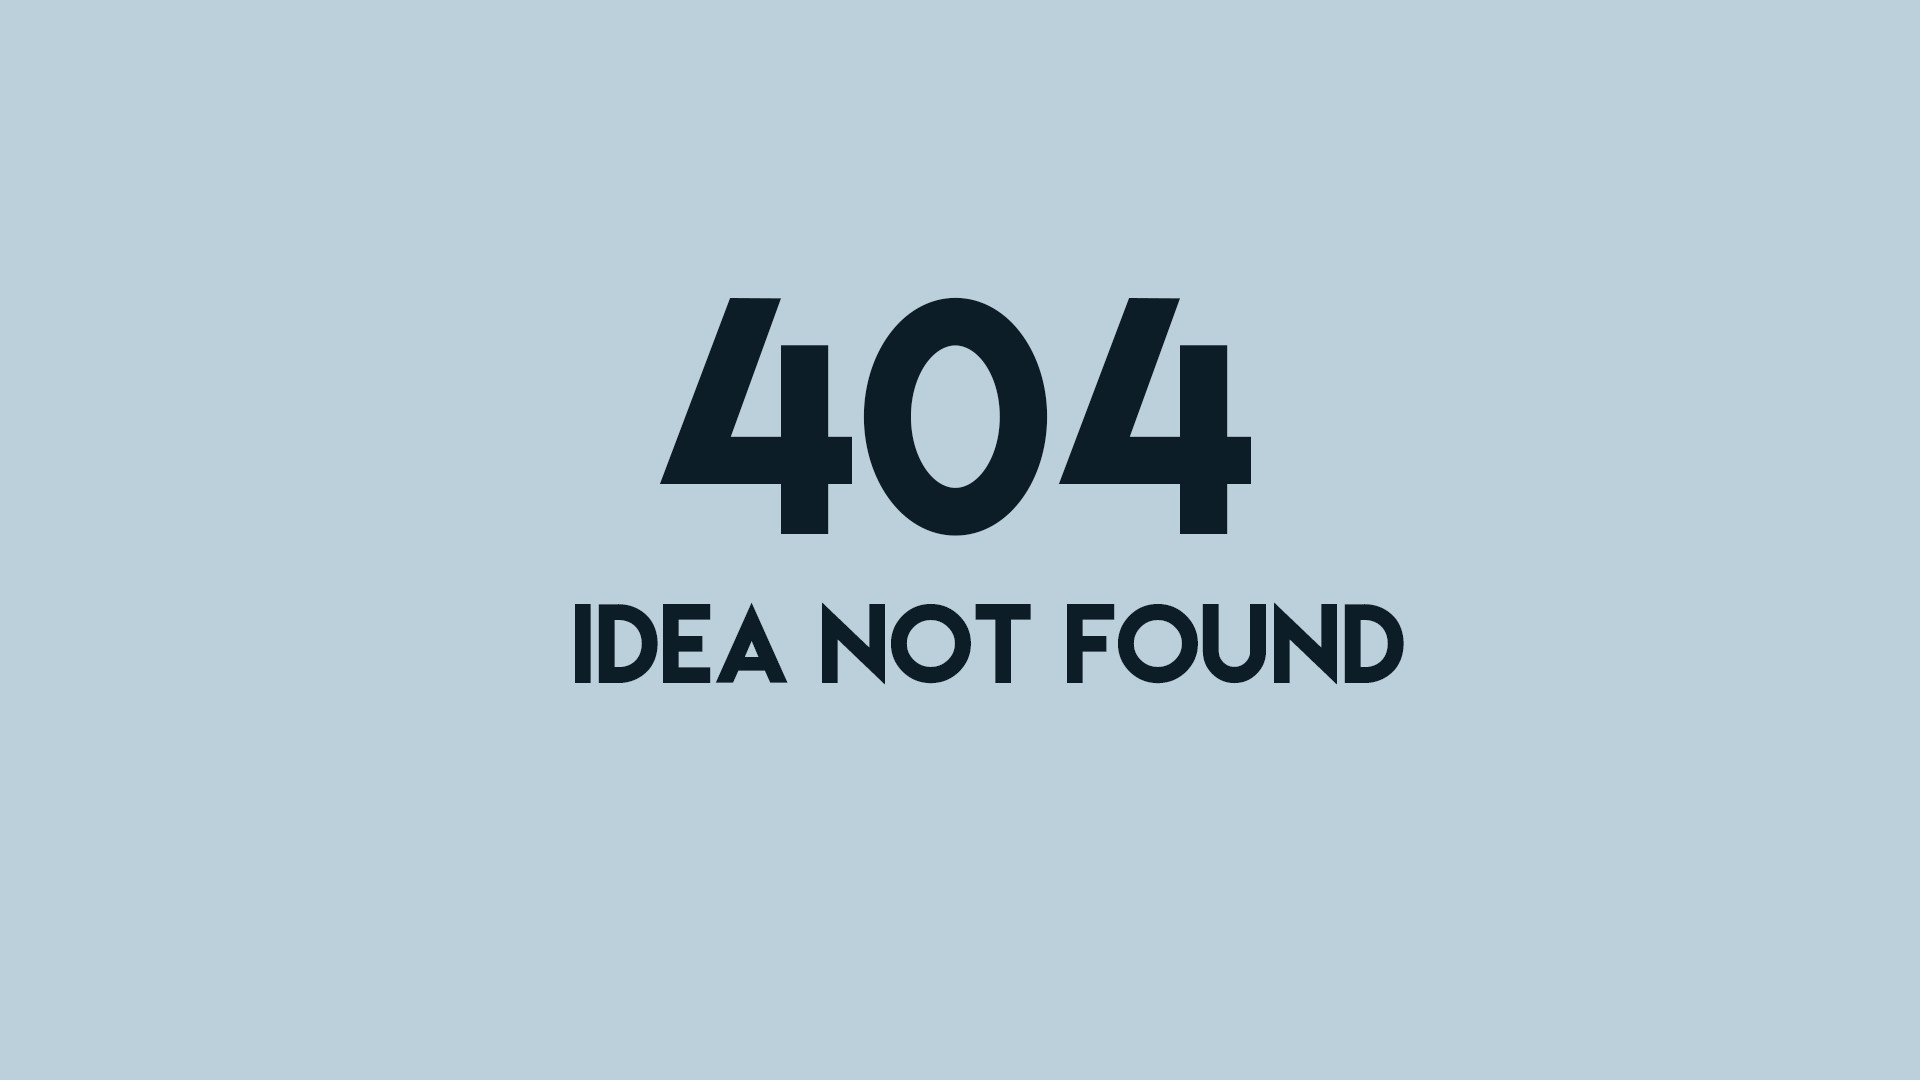 Error 404 Desktop wallpaper